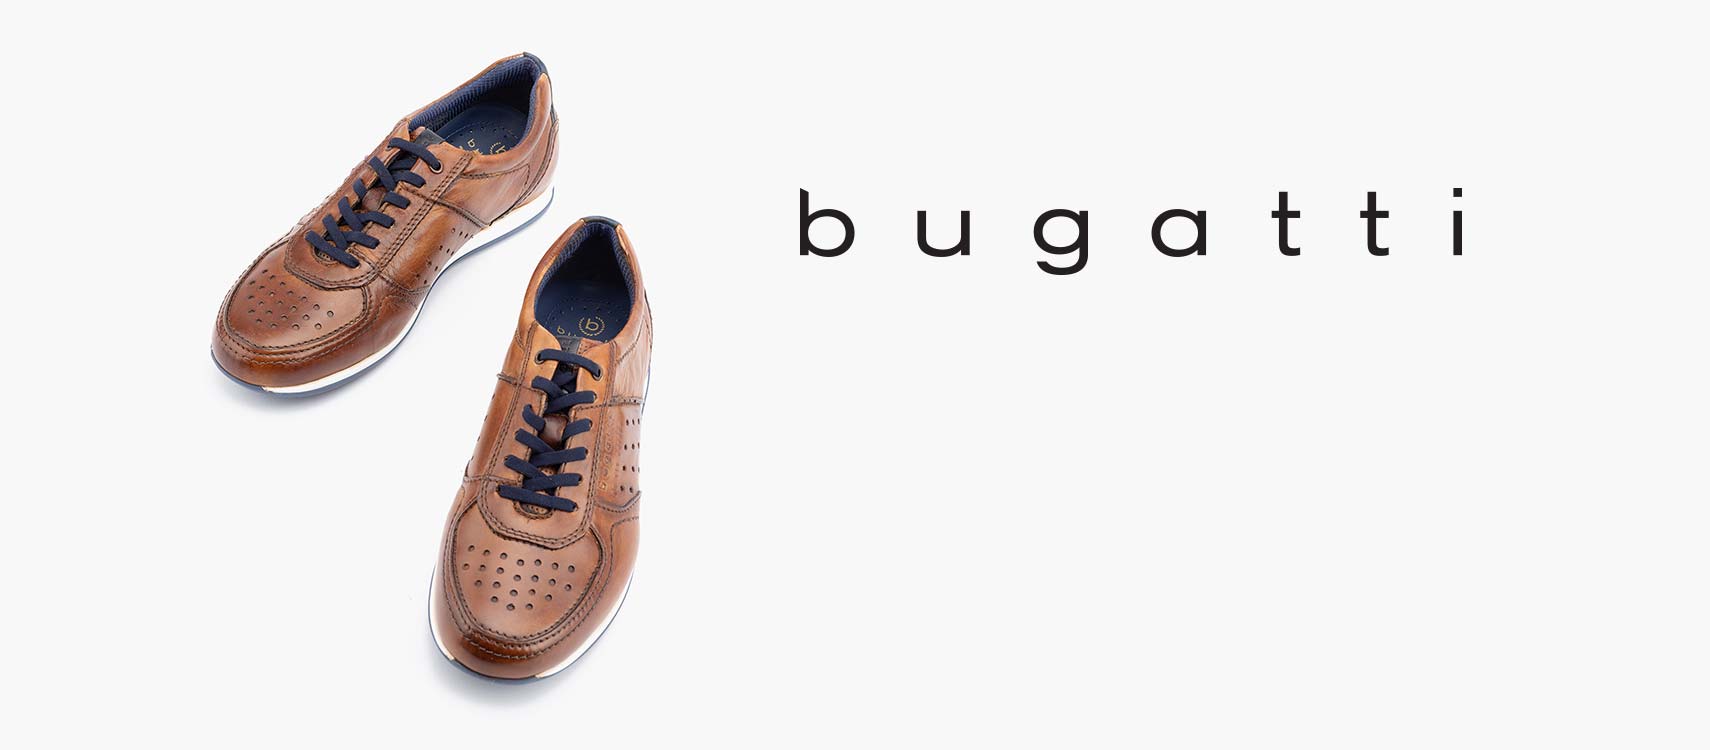 bugatti shoes company